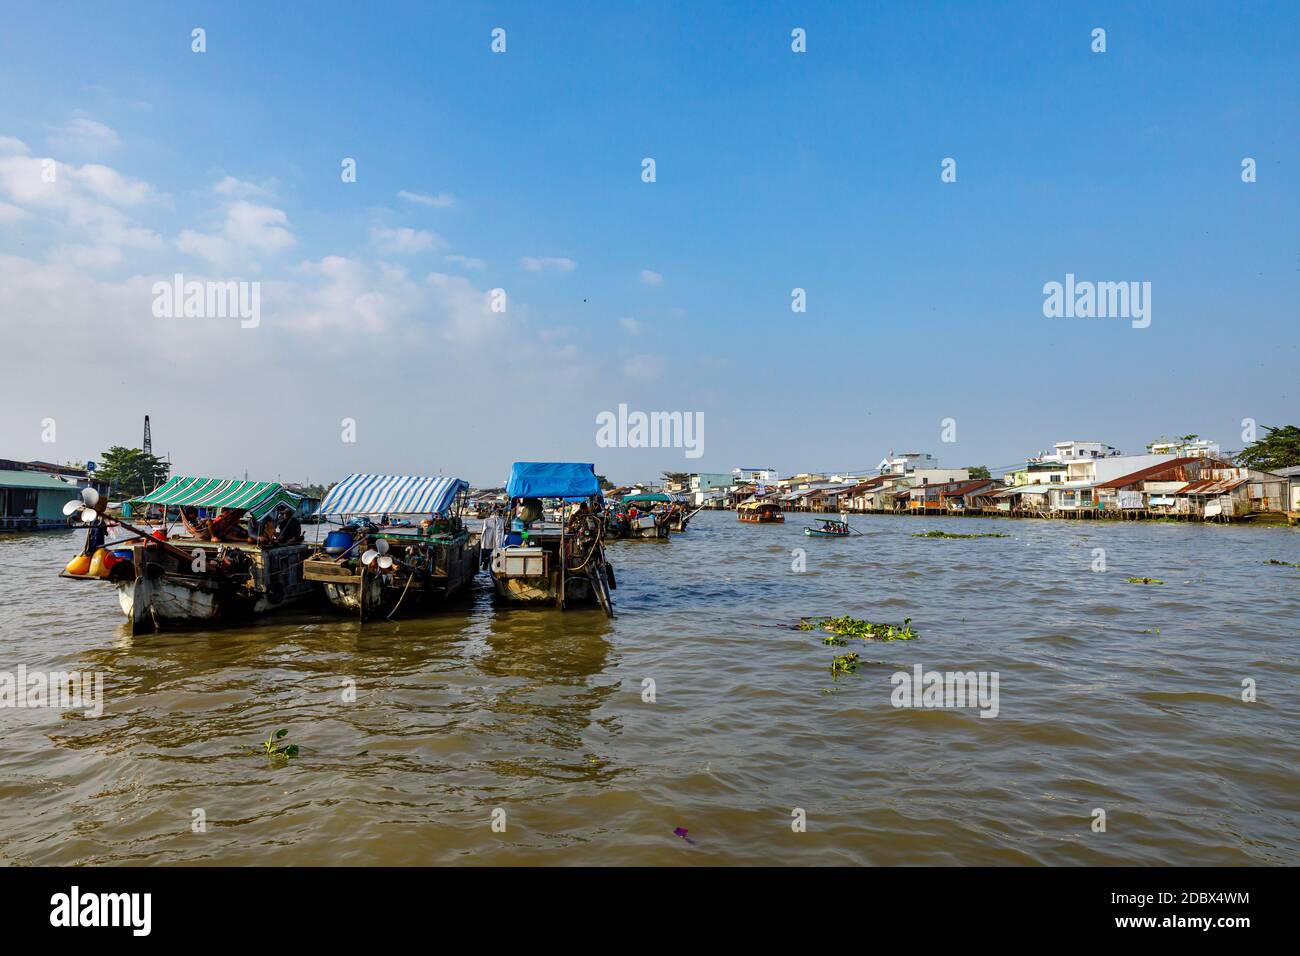 Il mercato galleggiante nel delta del Mekong a Cai Rang in Vietnam, 28. Dicembre 2019 Foto Stock